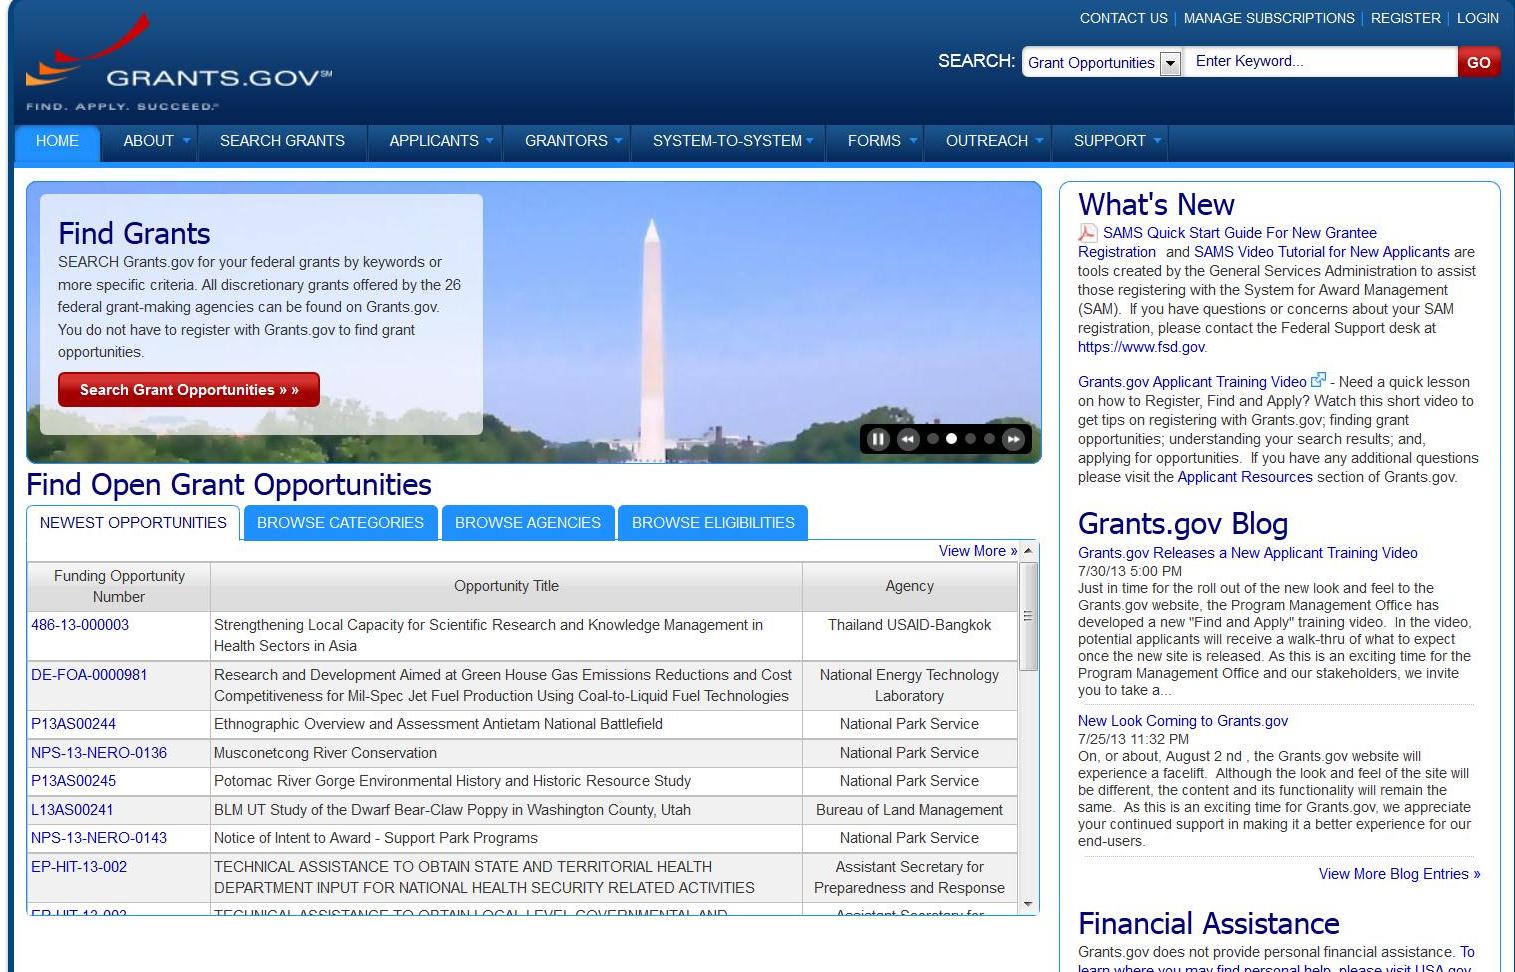 Screen shot grants.gov